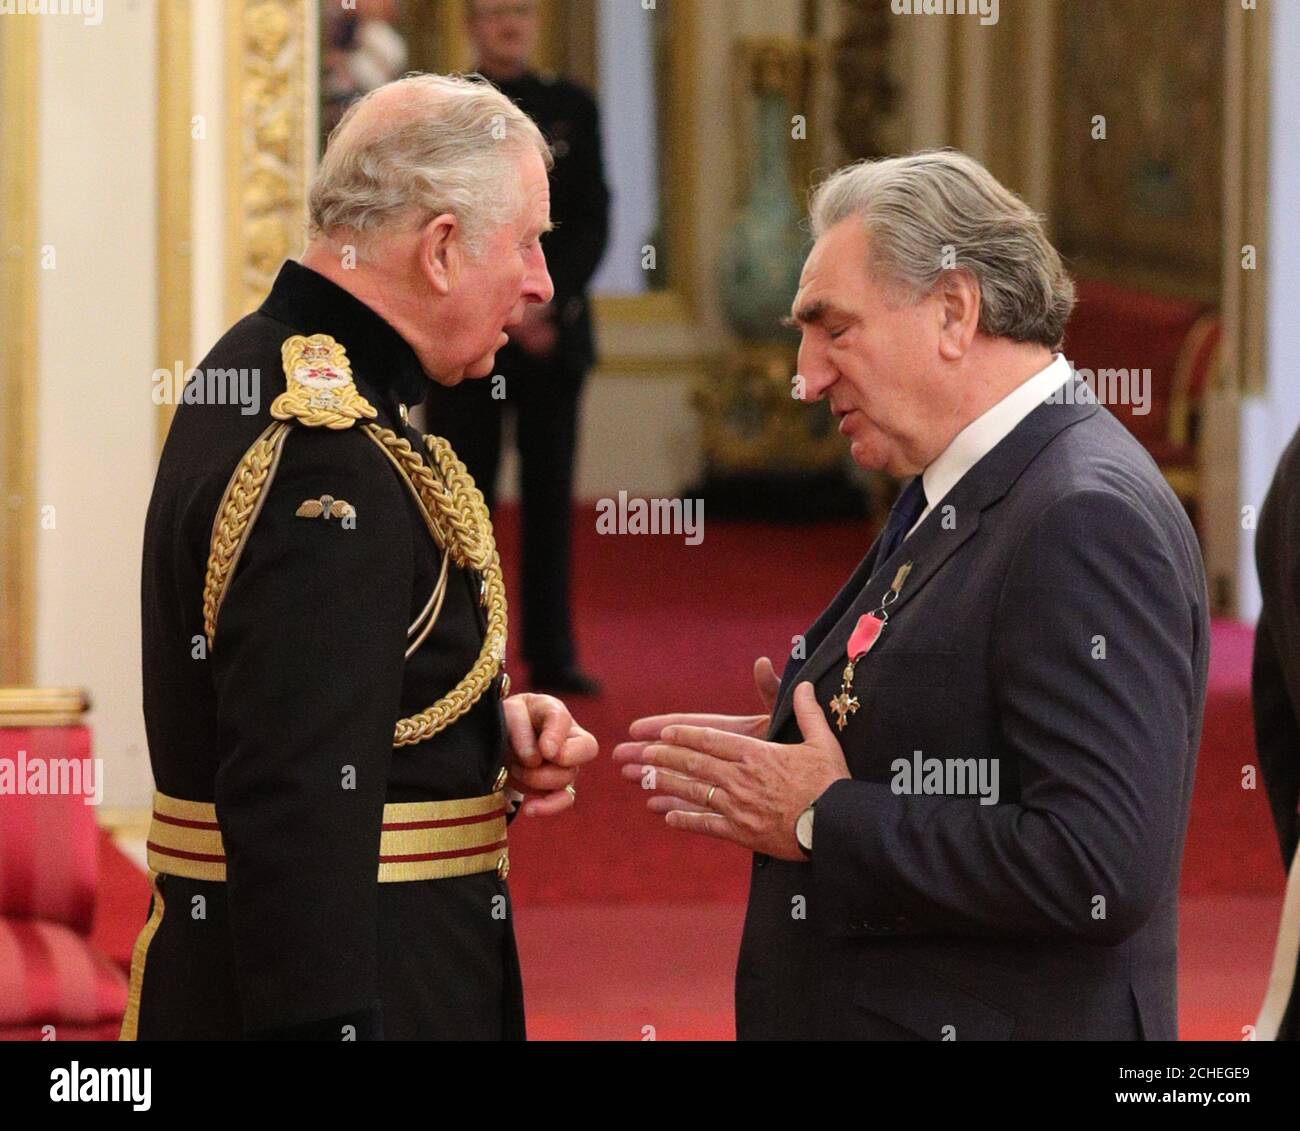 L'acteur Jim carter, plus connu pour son rôle à Downton Abbey et jouant M. Carson, est nommé Officier de l'ordre de l'Empire britannique (OBE) par le Prince de Galles lors d'une cérémonie d'investiture à Buckingham Palace, Londres. Banque D'Images